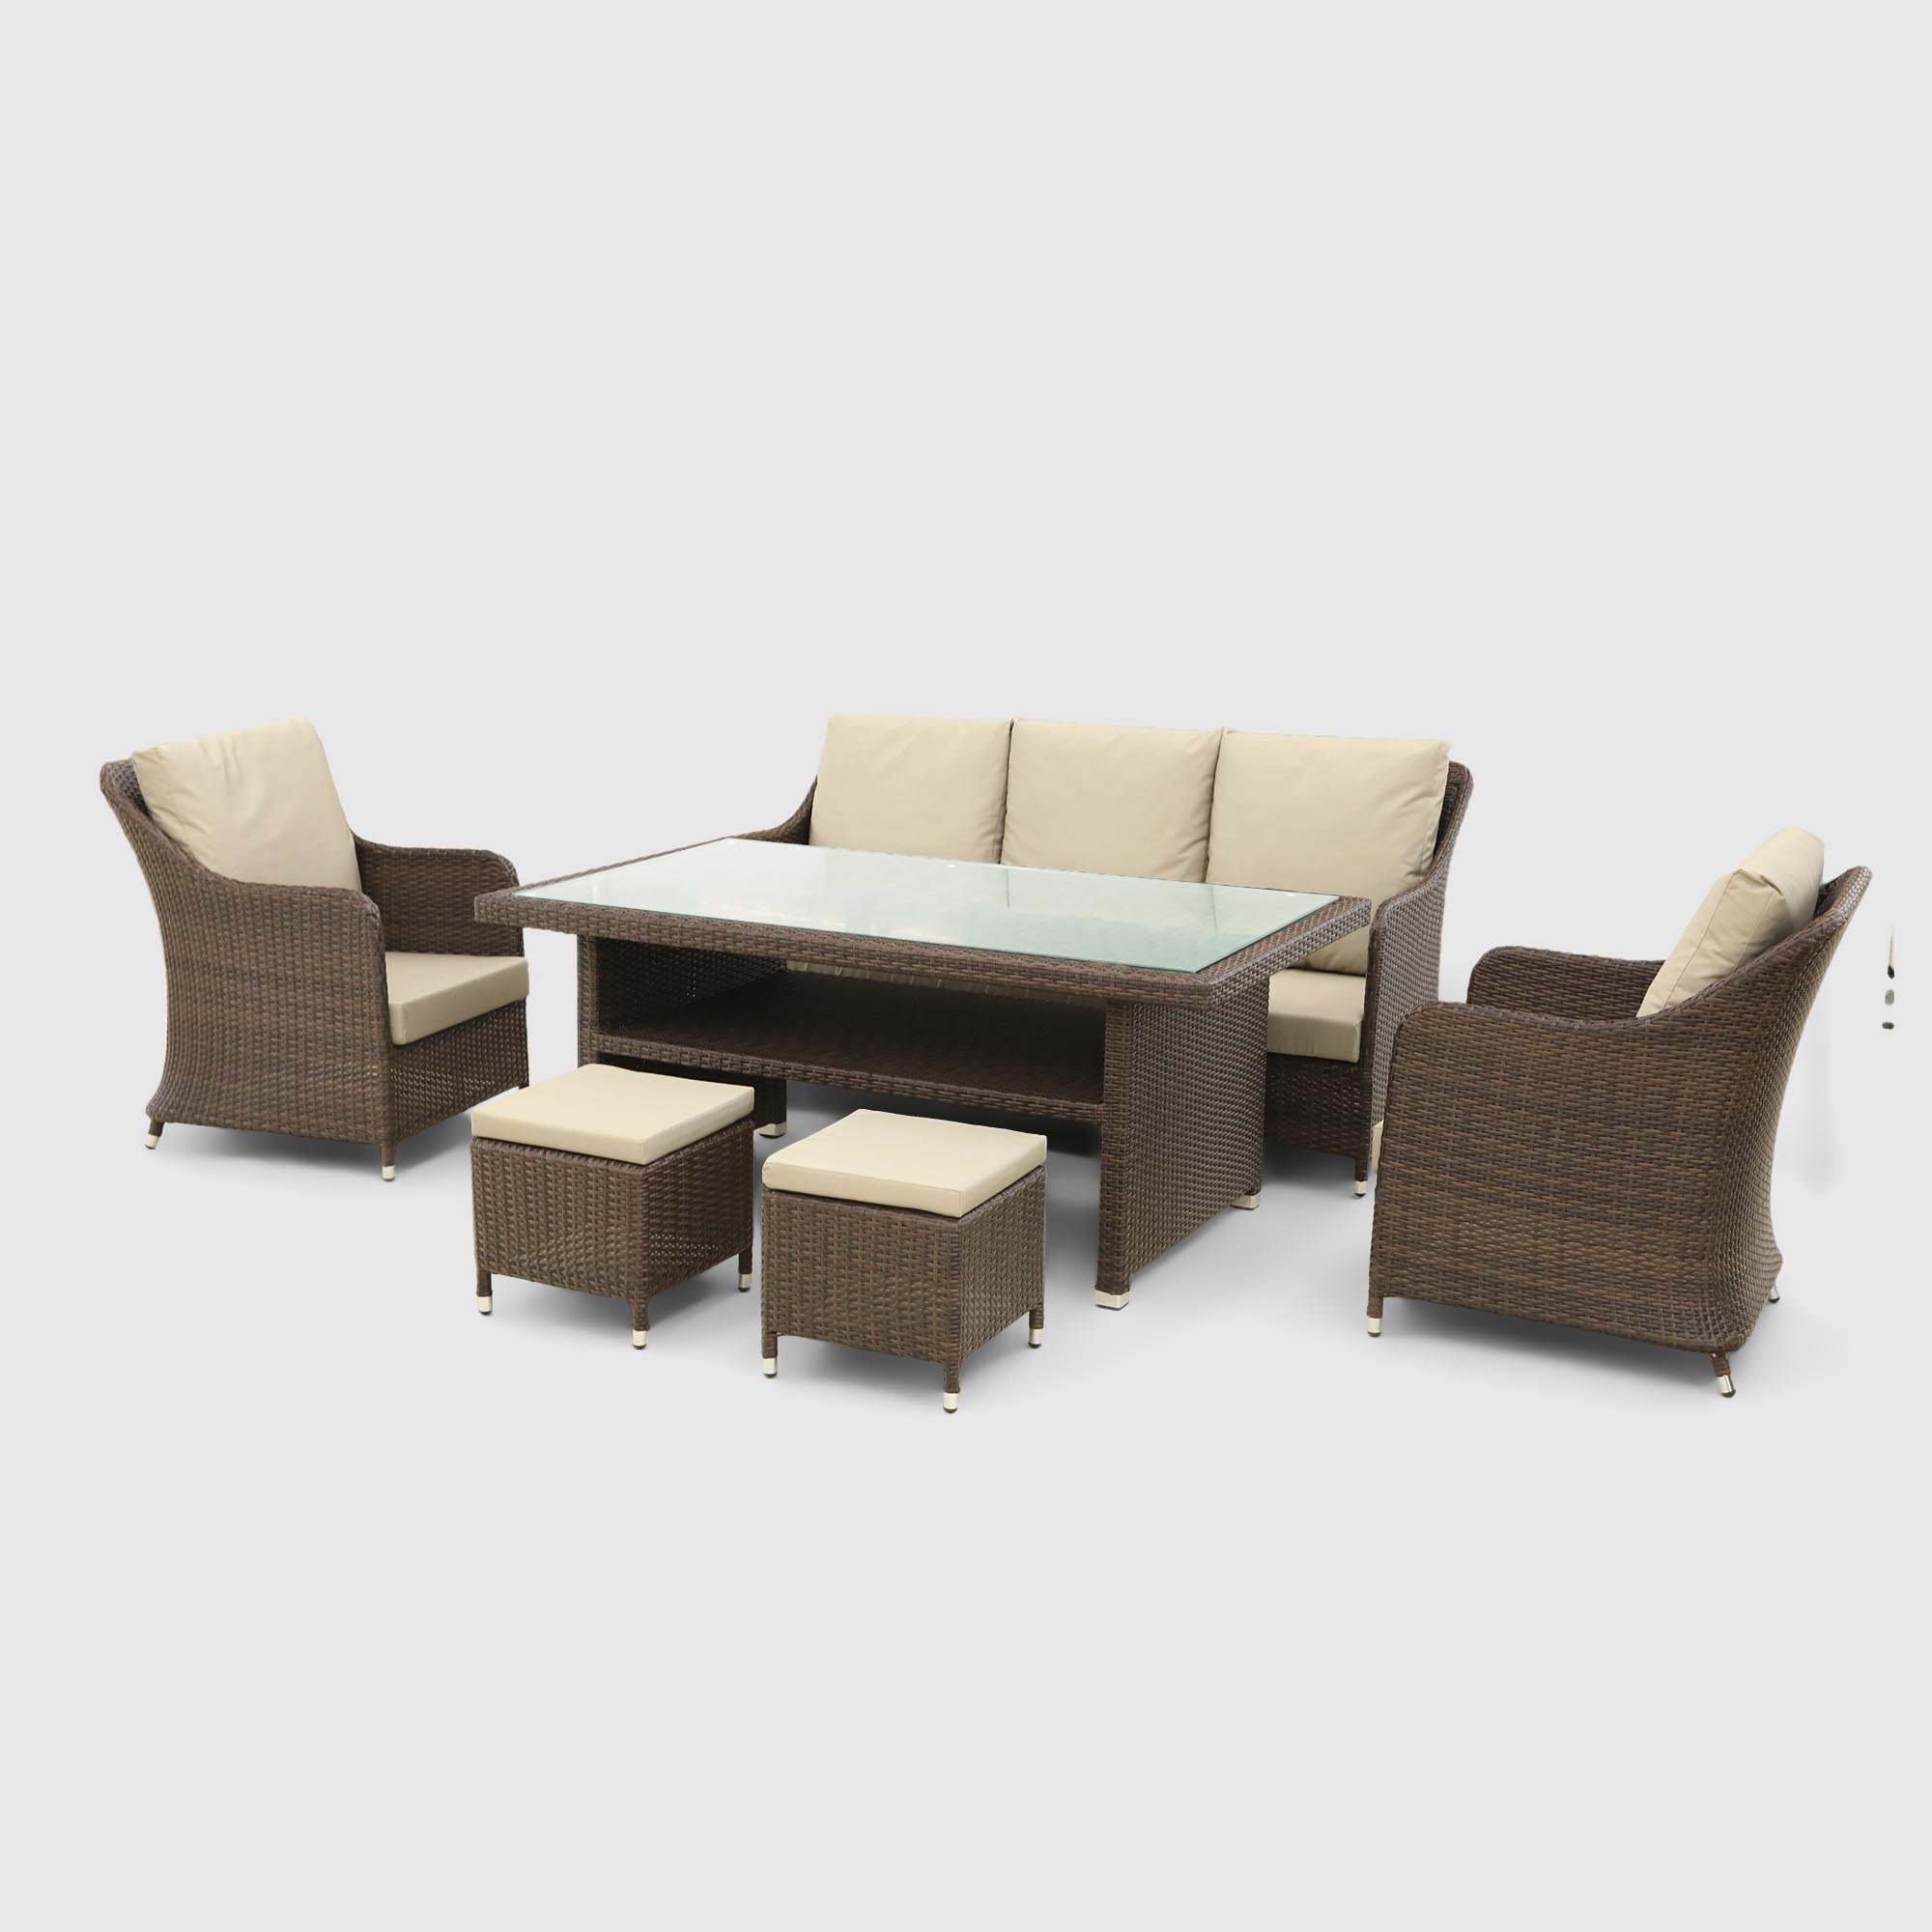 Комплект мебели Ns Rattan Baku коричневый с бежевым 6 предметов, цвет бежевый, размер 185х63х93